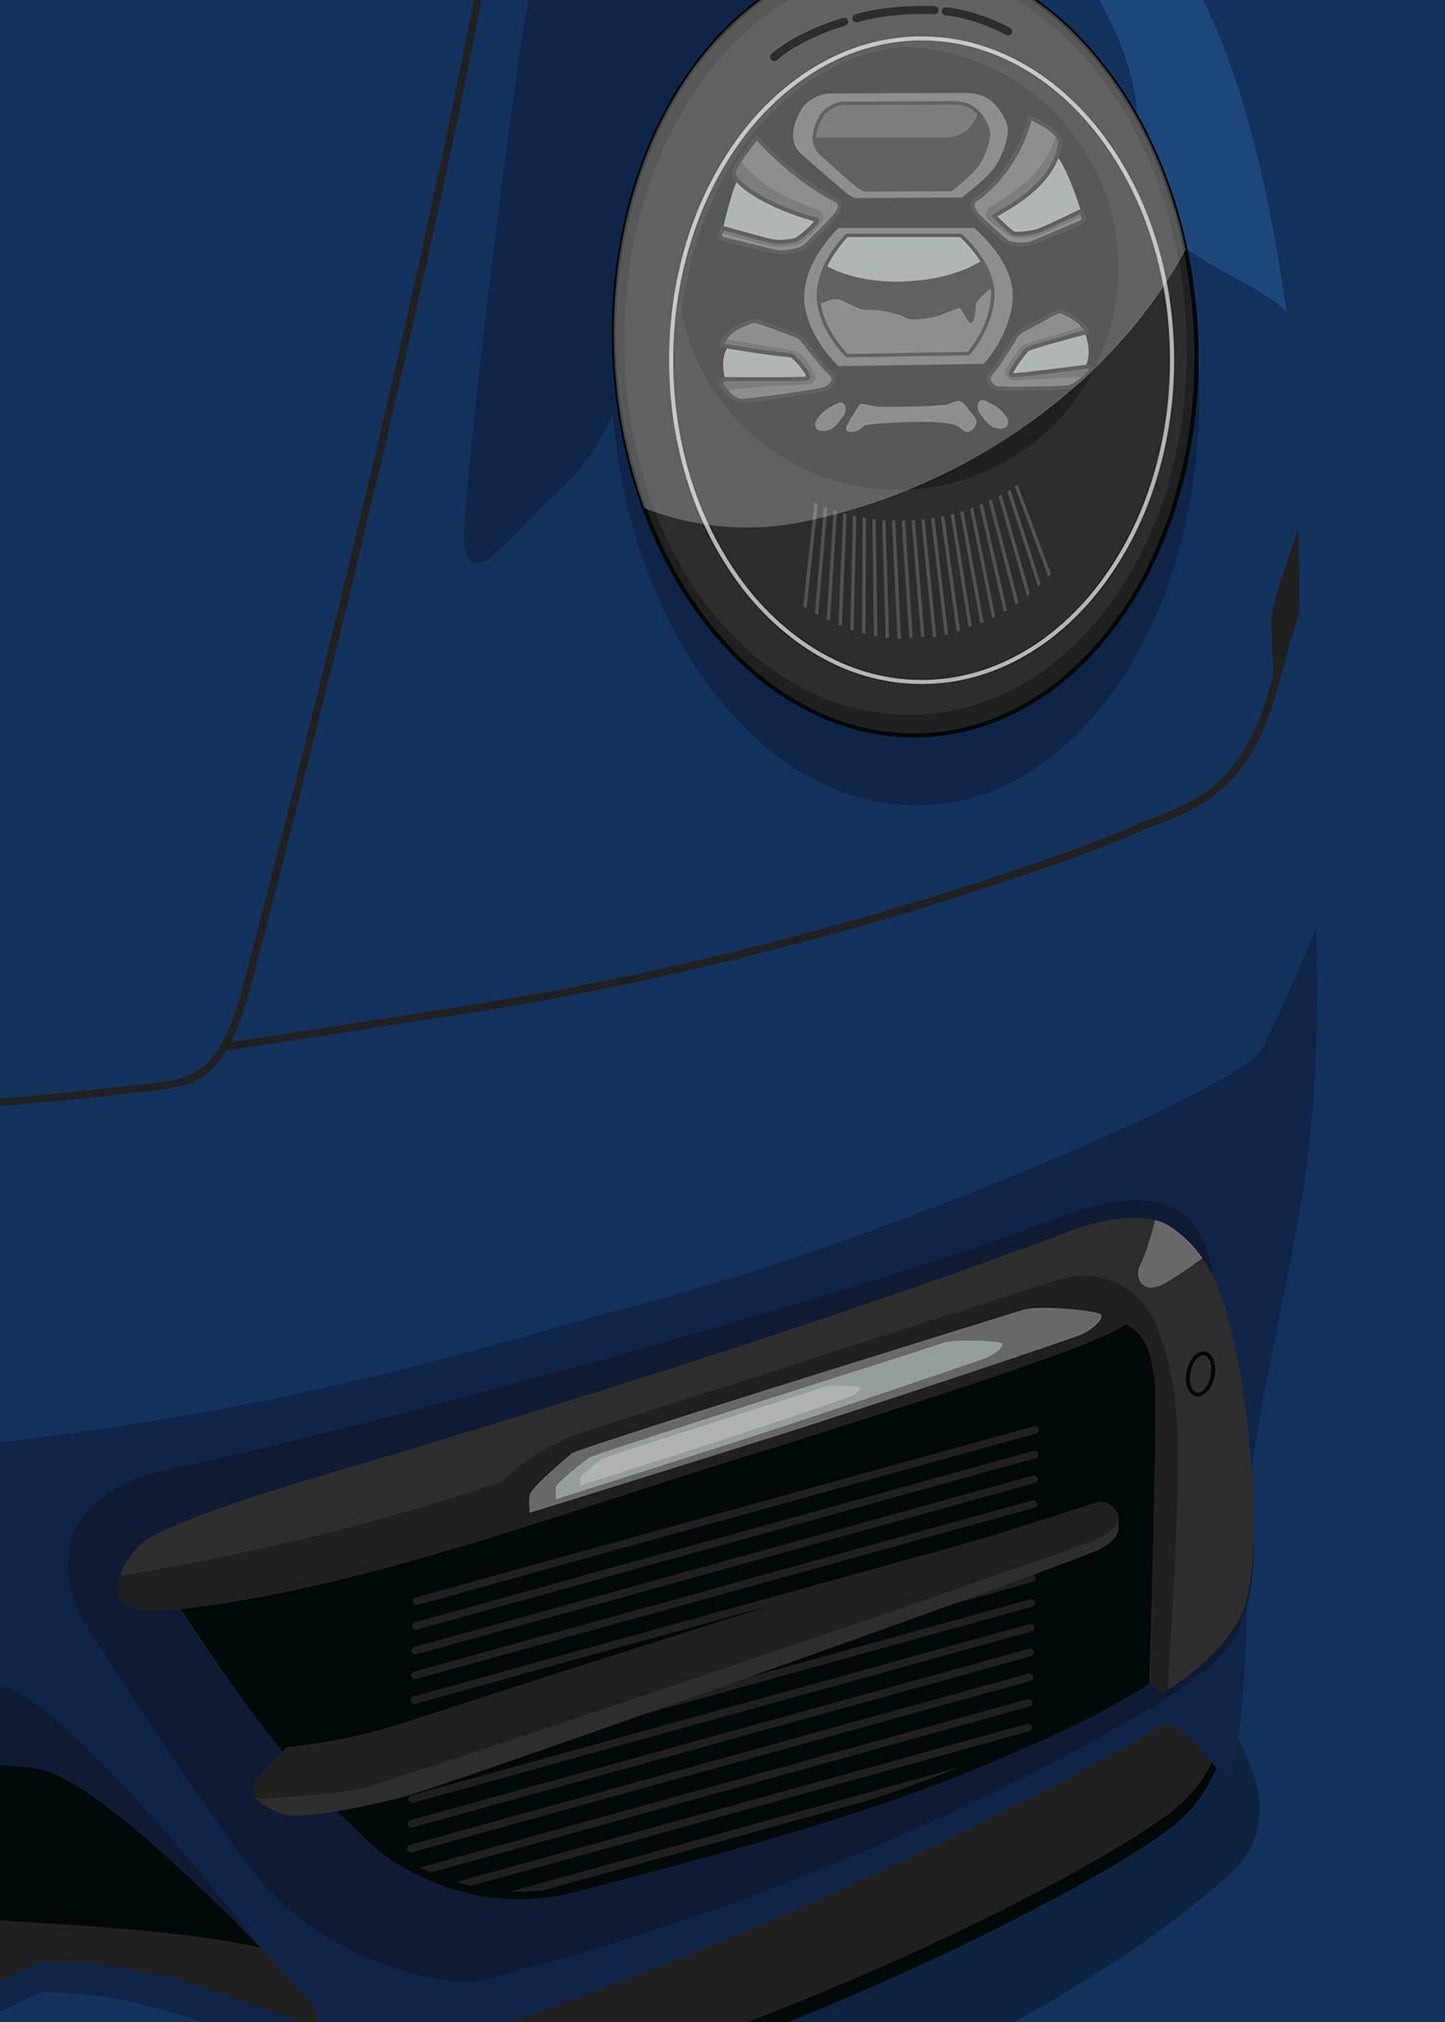 2021 Porsche 911 (992) GTS Gentian Blue - poster print